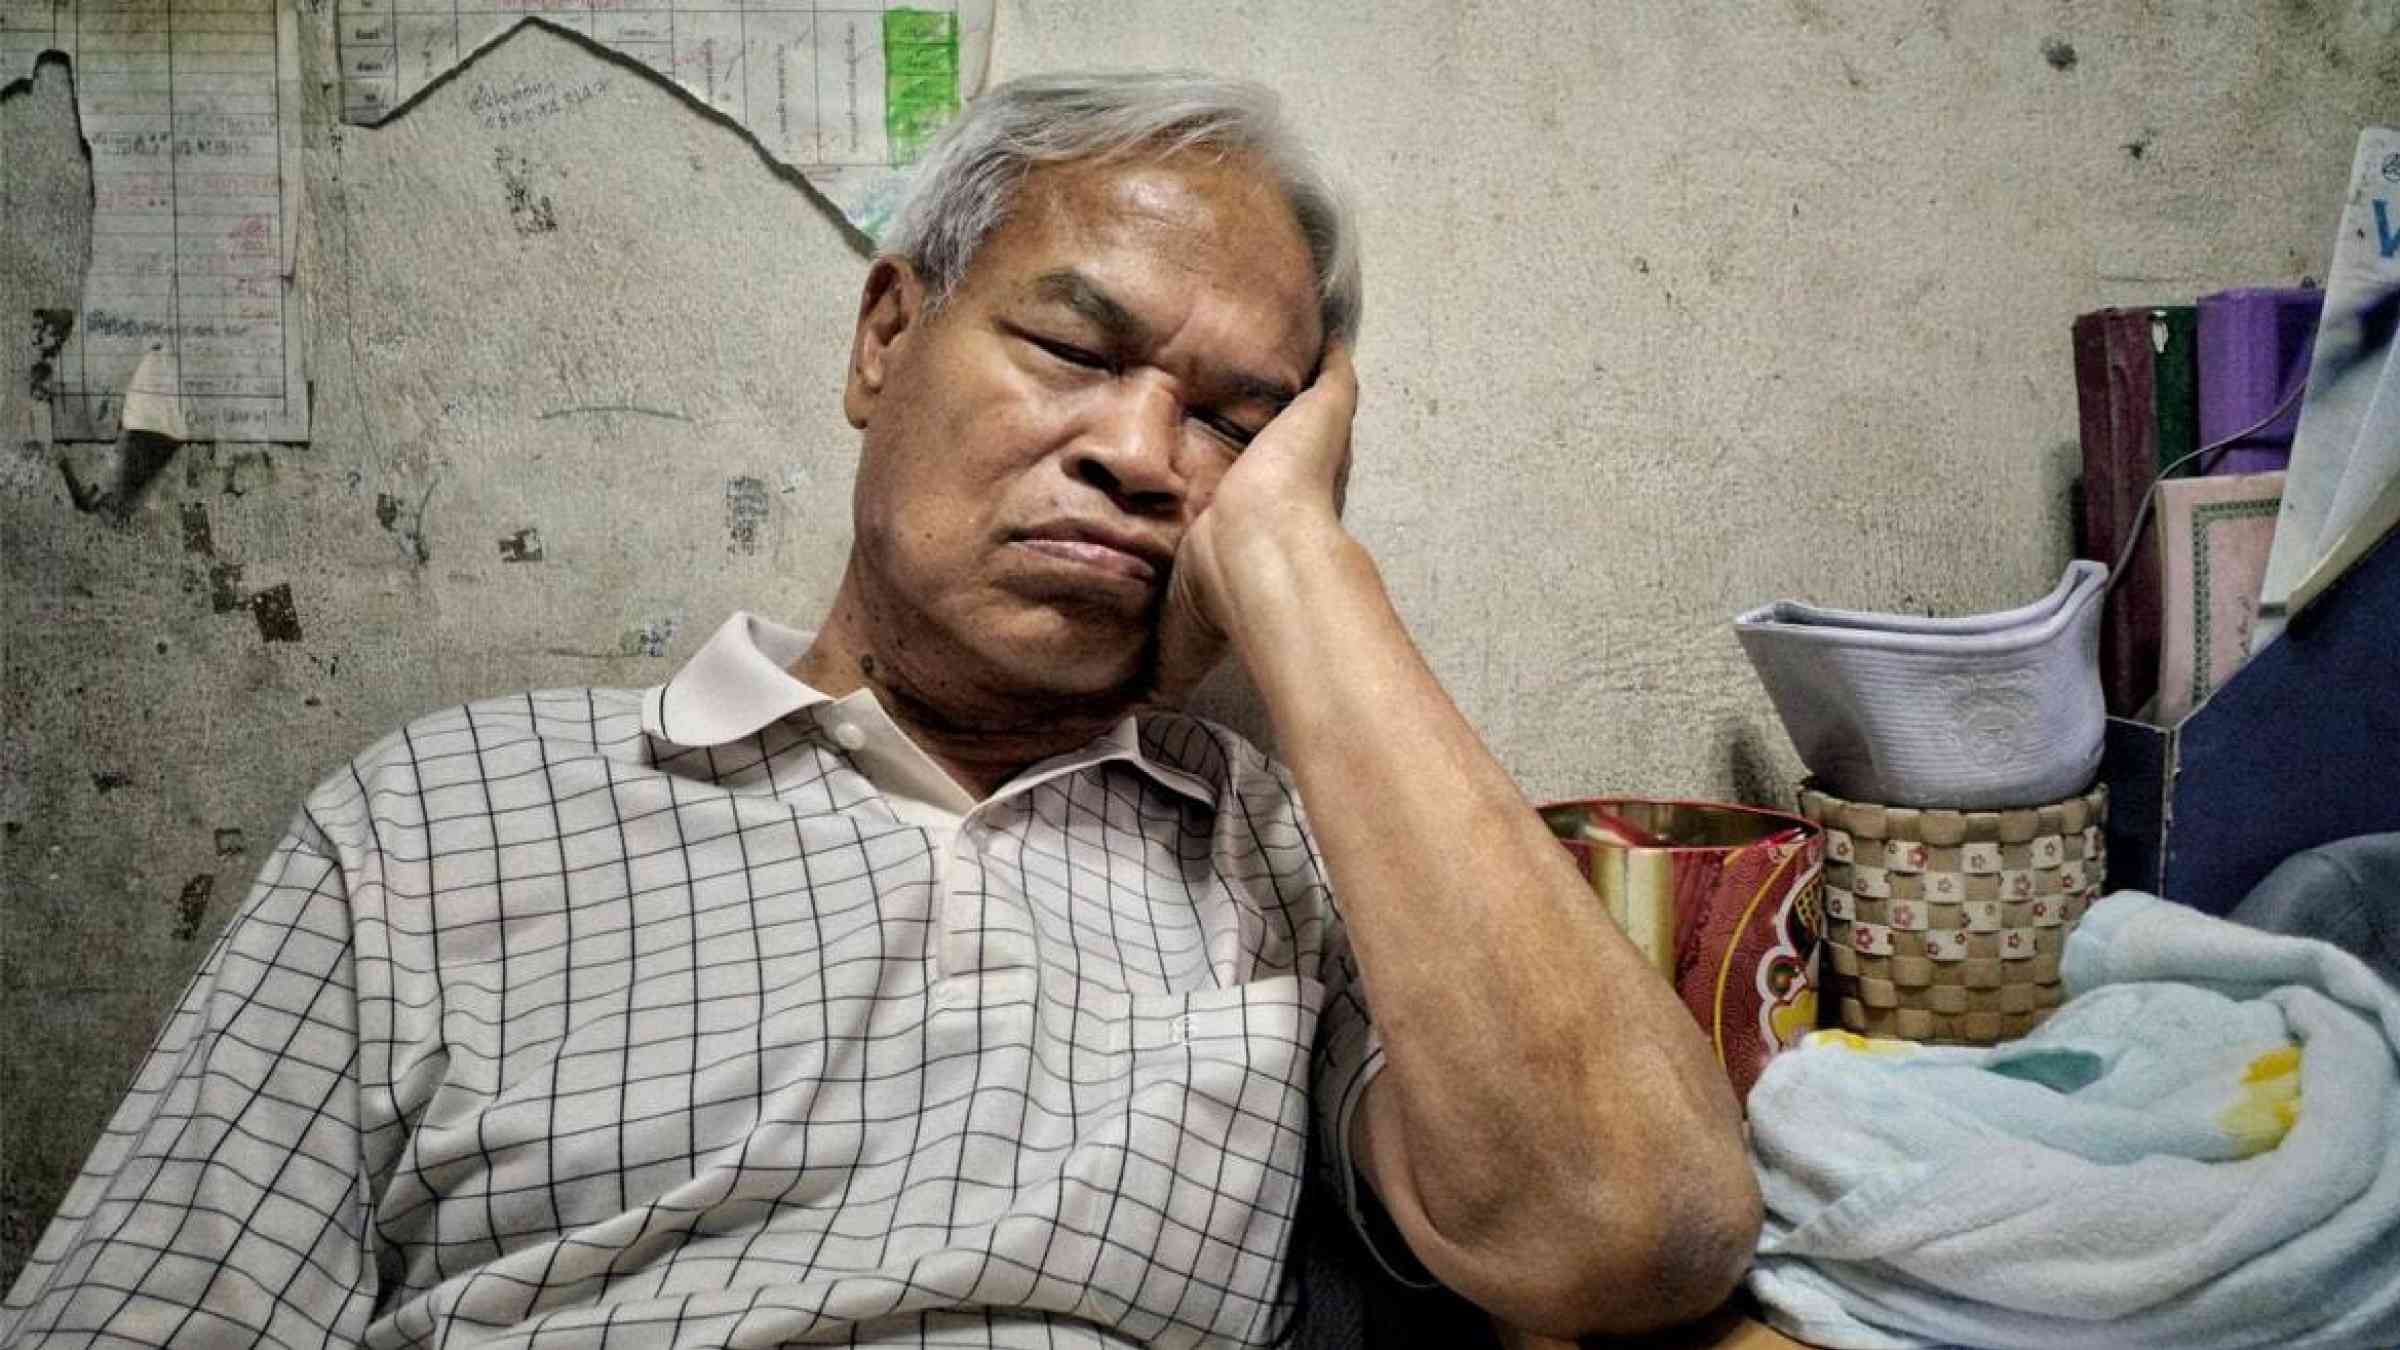 An elderly vendor in Bangkok, Thailand takes a nap